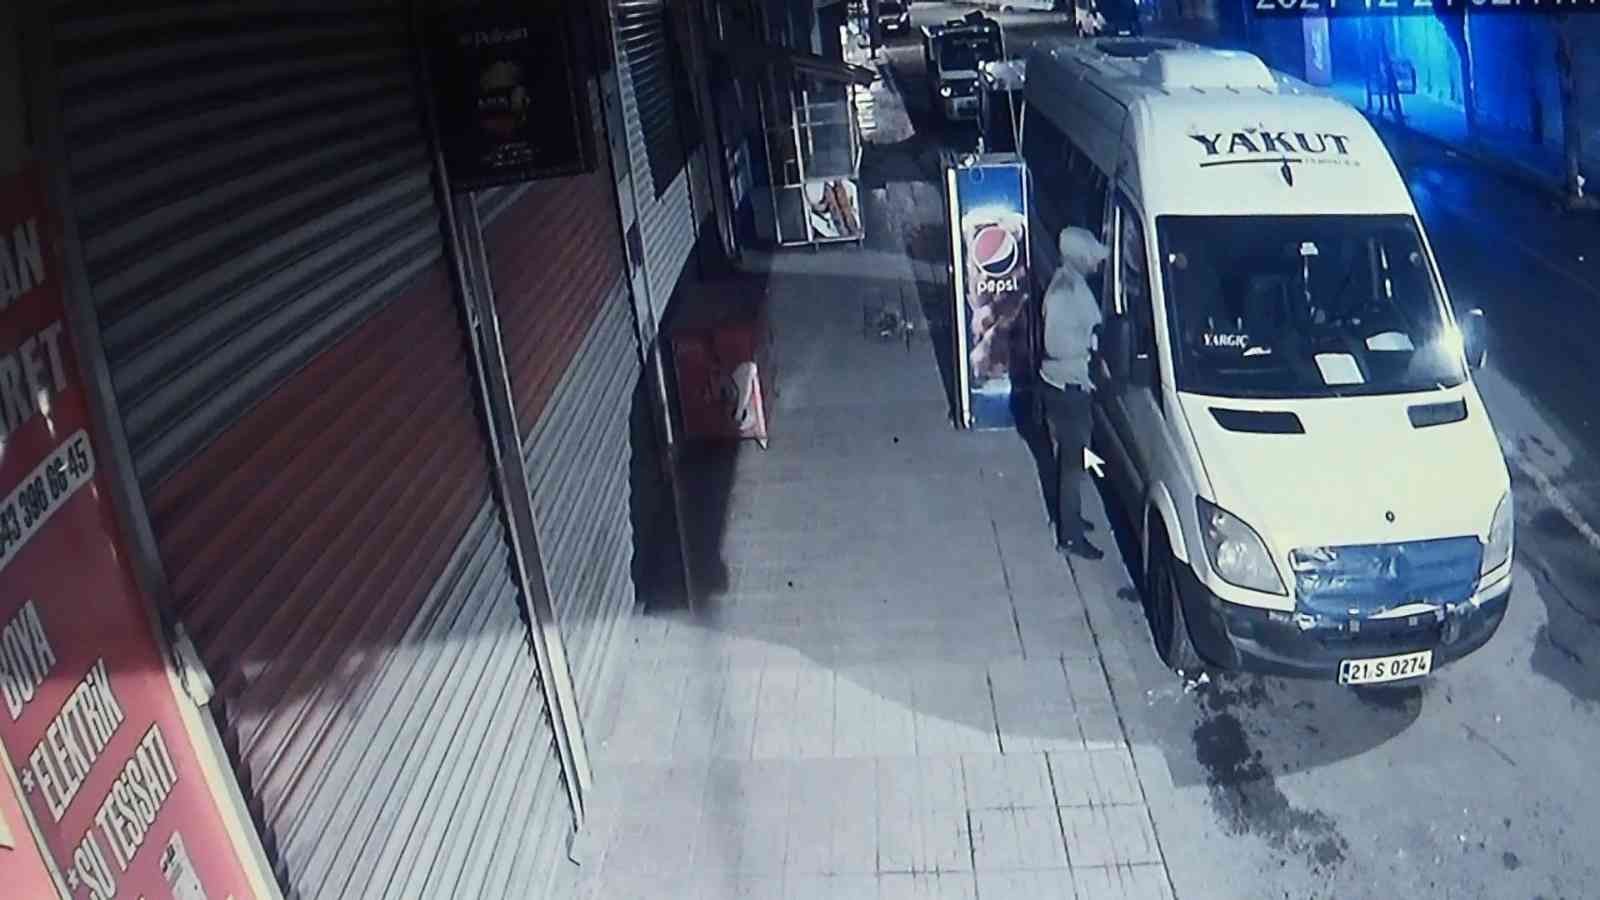 Hırsız, pazarcıyı terazisiz bıraktı #diyarbakir